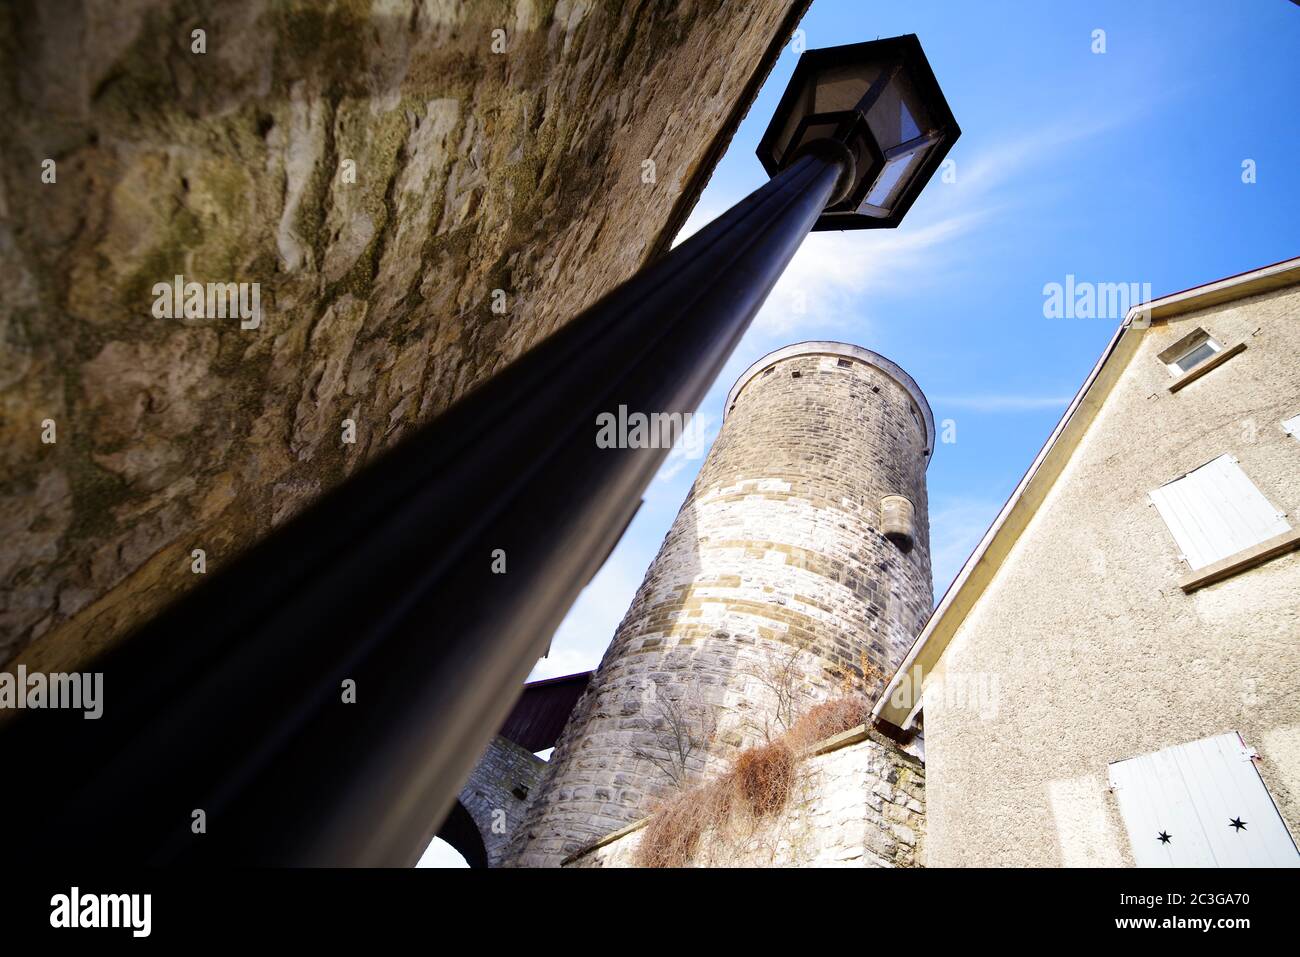 Mittelalterlicher Wachturm mit Straßenlampe unter blauem Himmel in Weitwinkeloptik Stockfoto